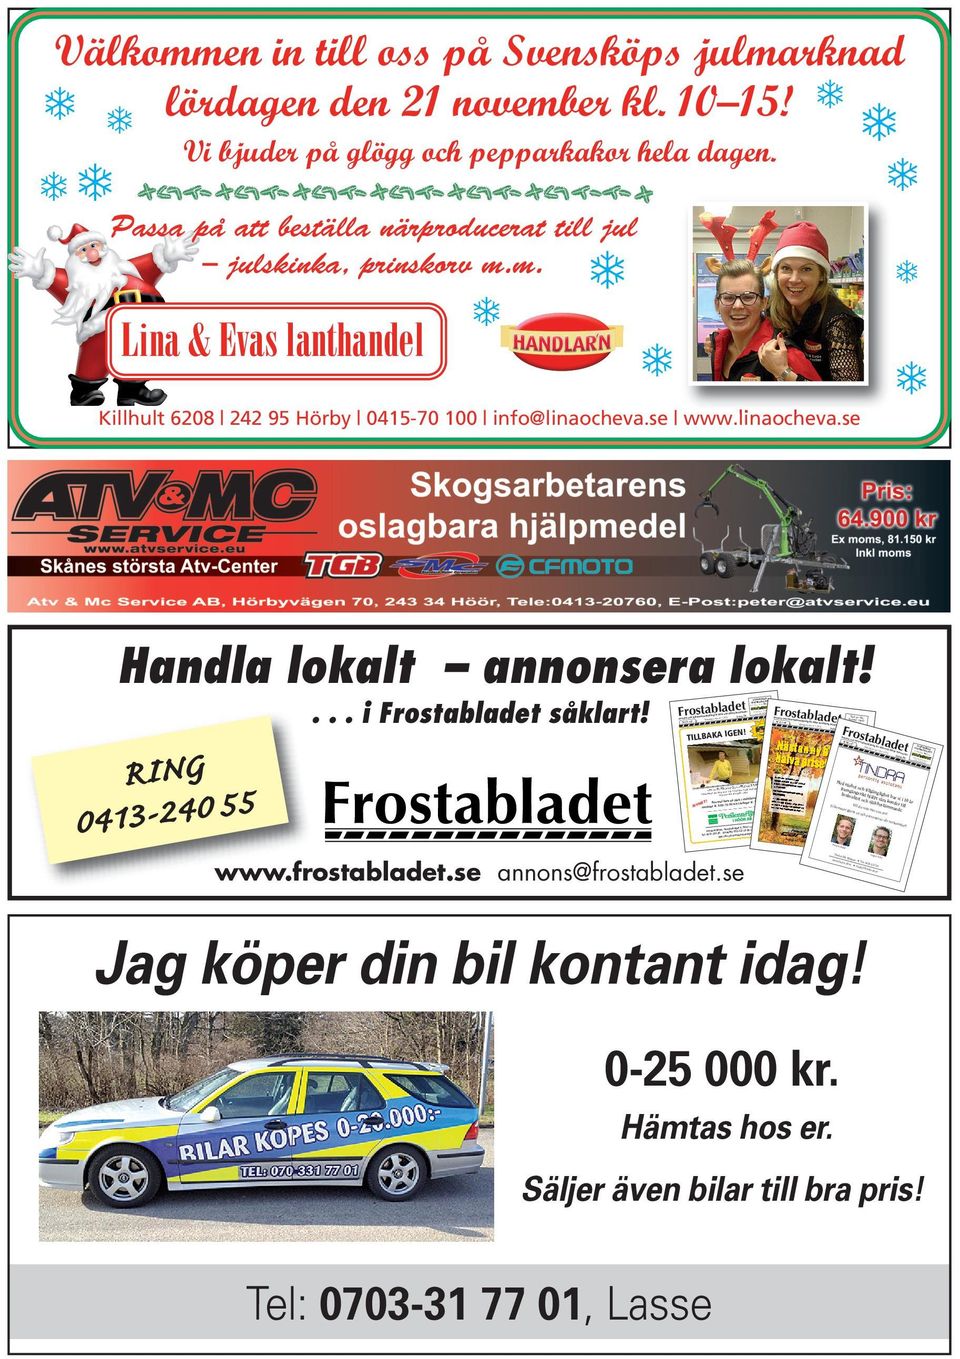 Frostabladet Annons- och 11 v 45 Nr 9,Nrv 36, Informationstidning för Höör och Måndagen den 2/11 2015 r Hörby kommune Årgång SLÄPVAGNAR UTHYRES BILLIGT!